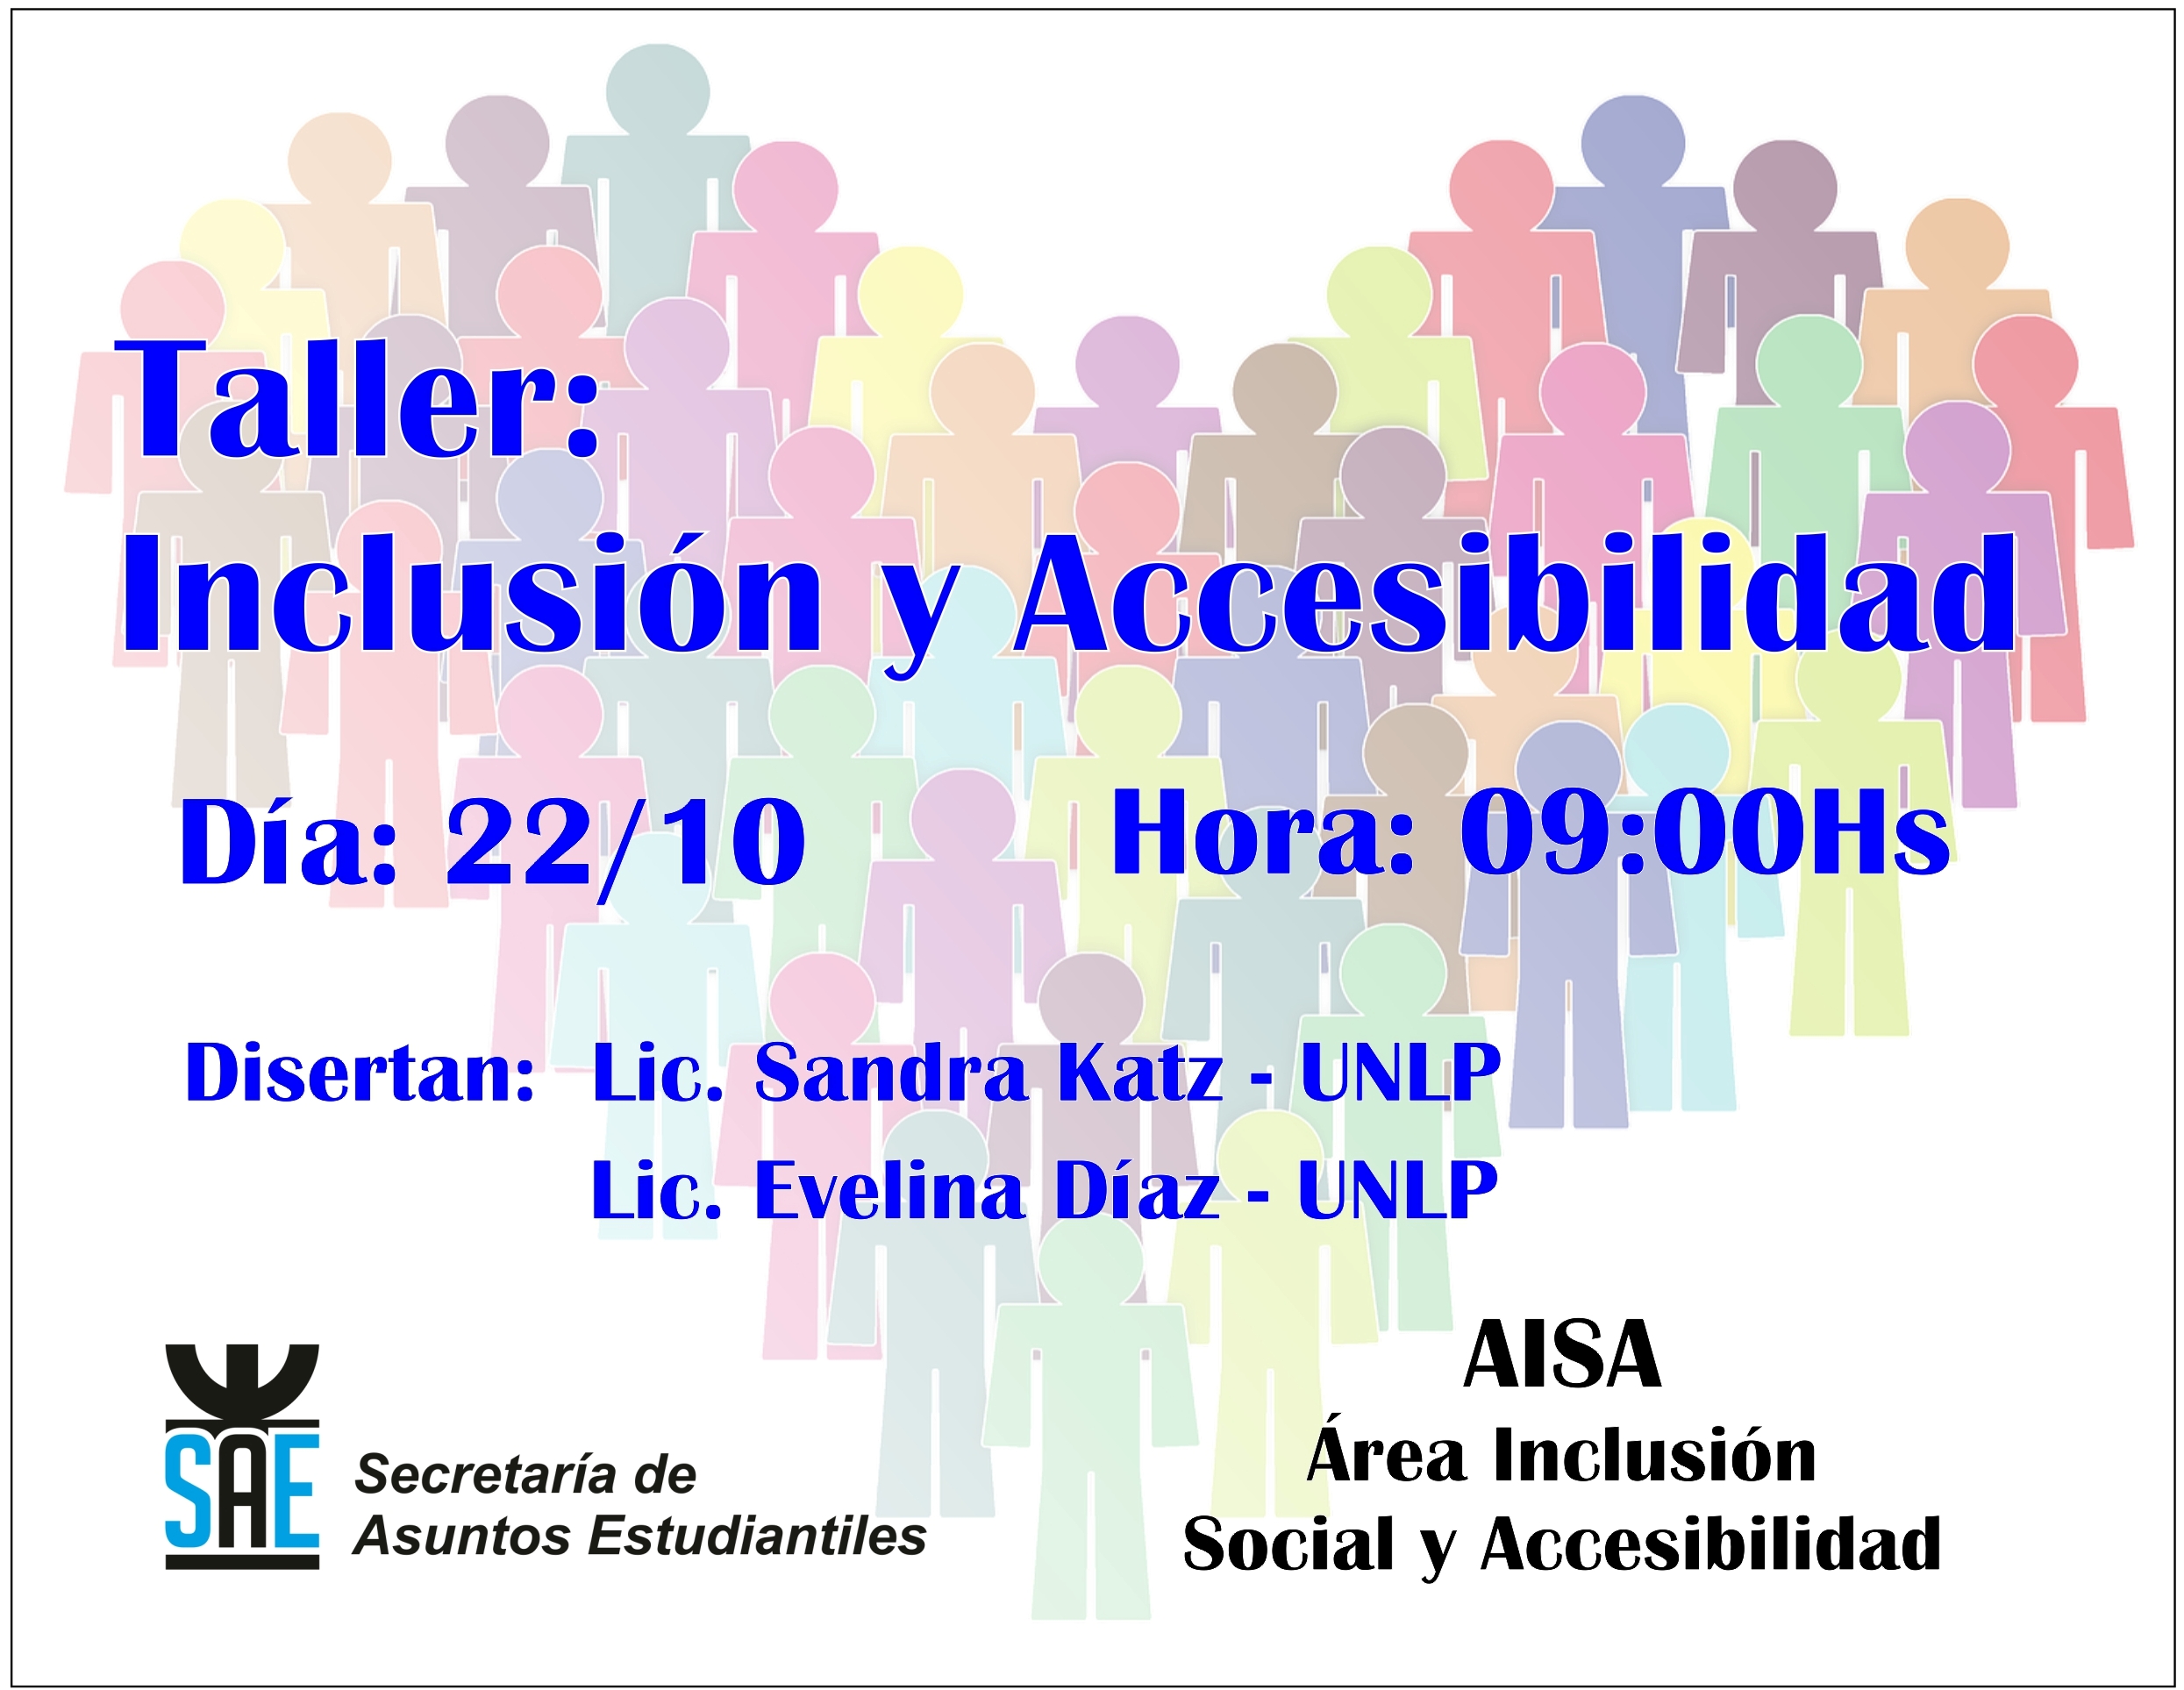 taller-de-inclusion-y-accesibilidad.jpg